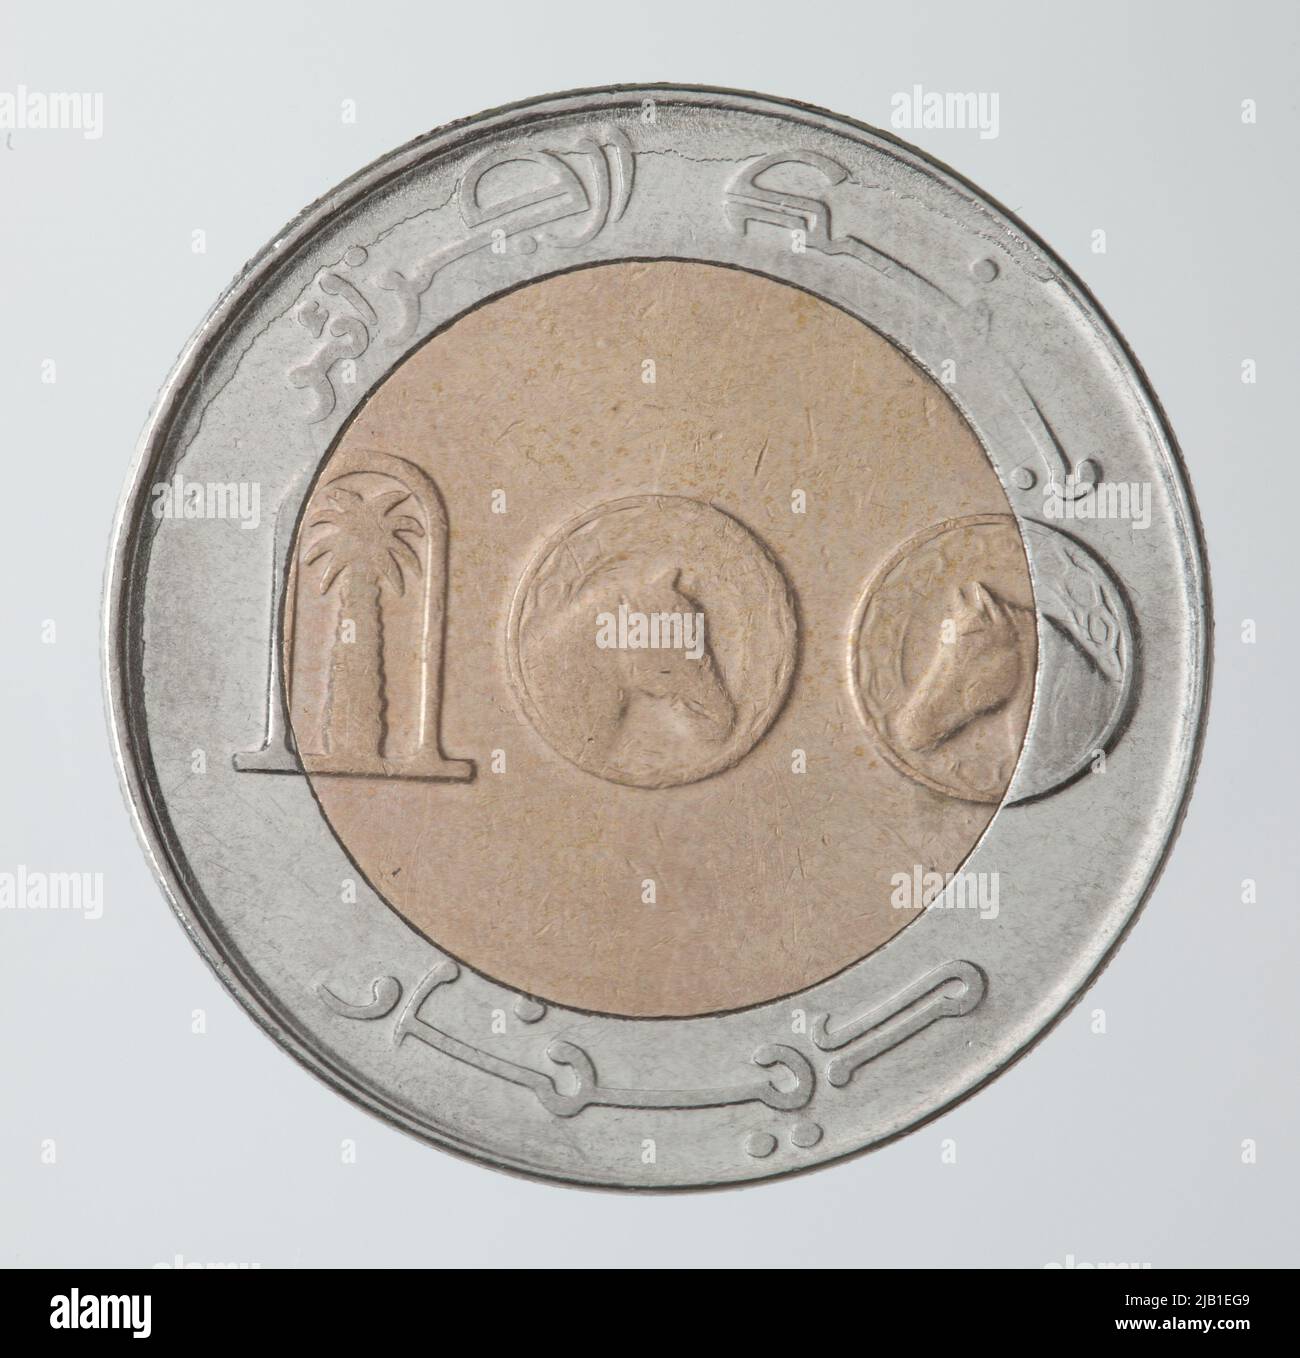 Circulation coin; Algeria, 100 Dinars, 2013 AD (AH 1434) Algeria Bank Stock Photo